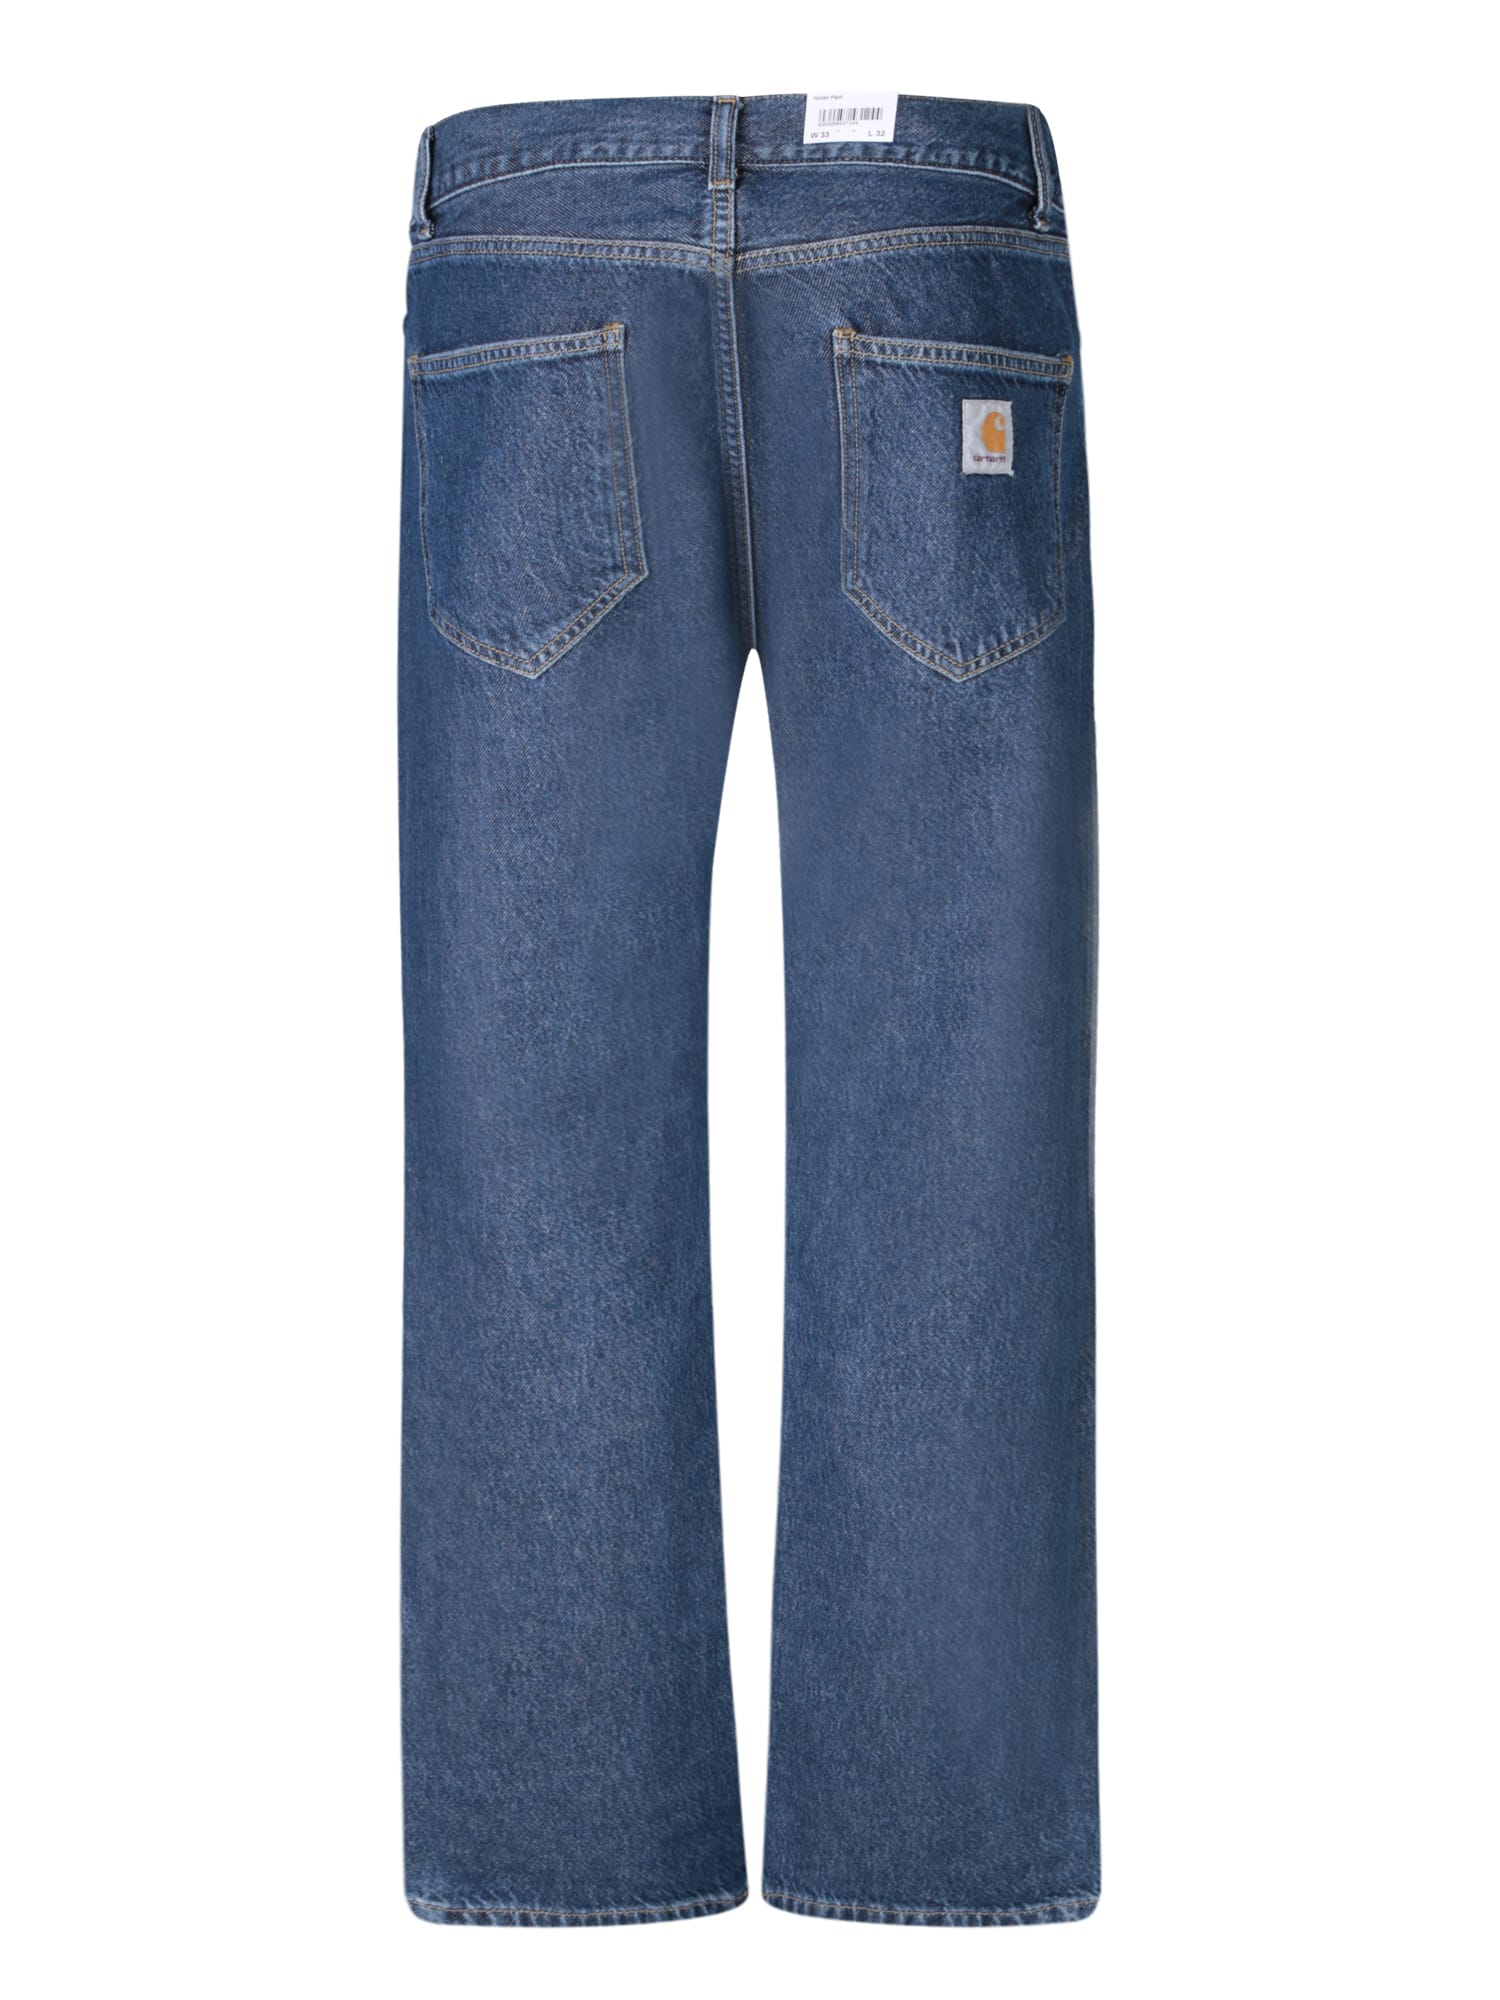 Shop Carhartt Nolan Blue Jeans